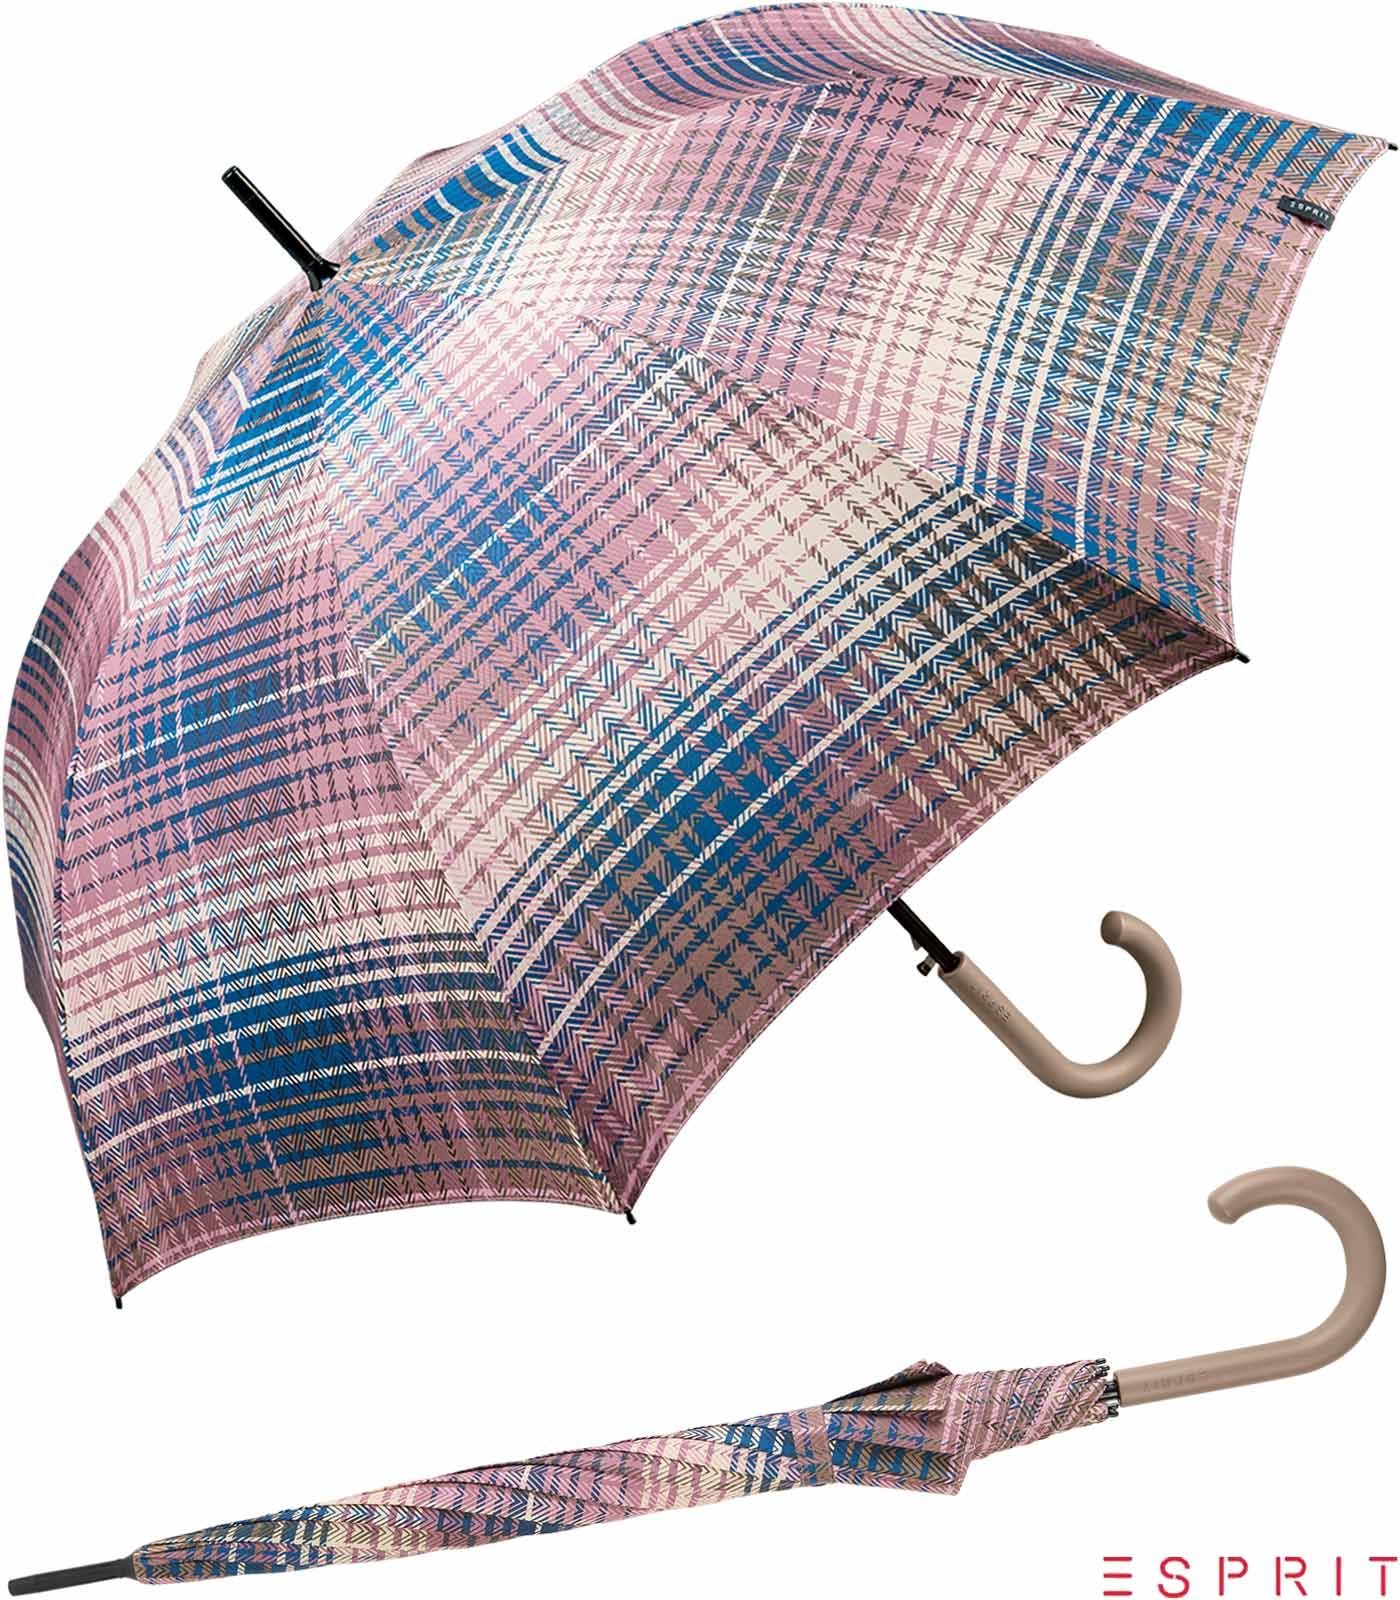 brandneu authentisch Esprit Langregenschirm Damen mit dusky Karo-Optik - stabil, Auf-Automatik orchid, groß, in Cosy bunter rosa-bunt Checks 